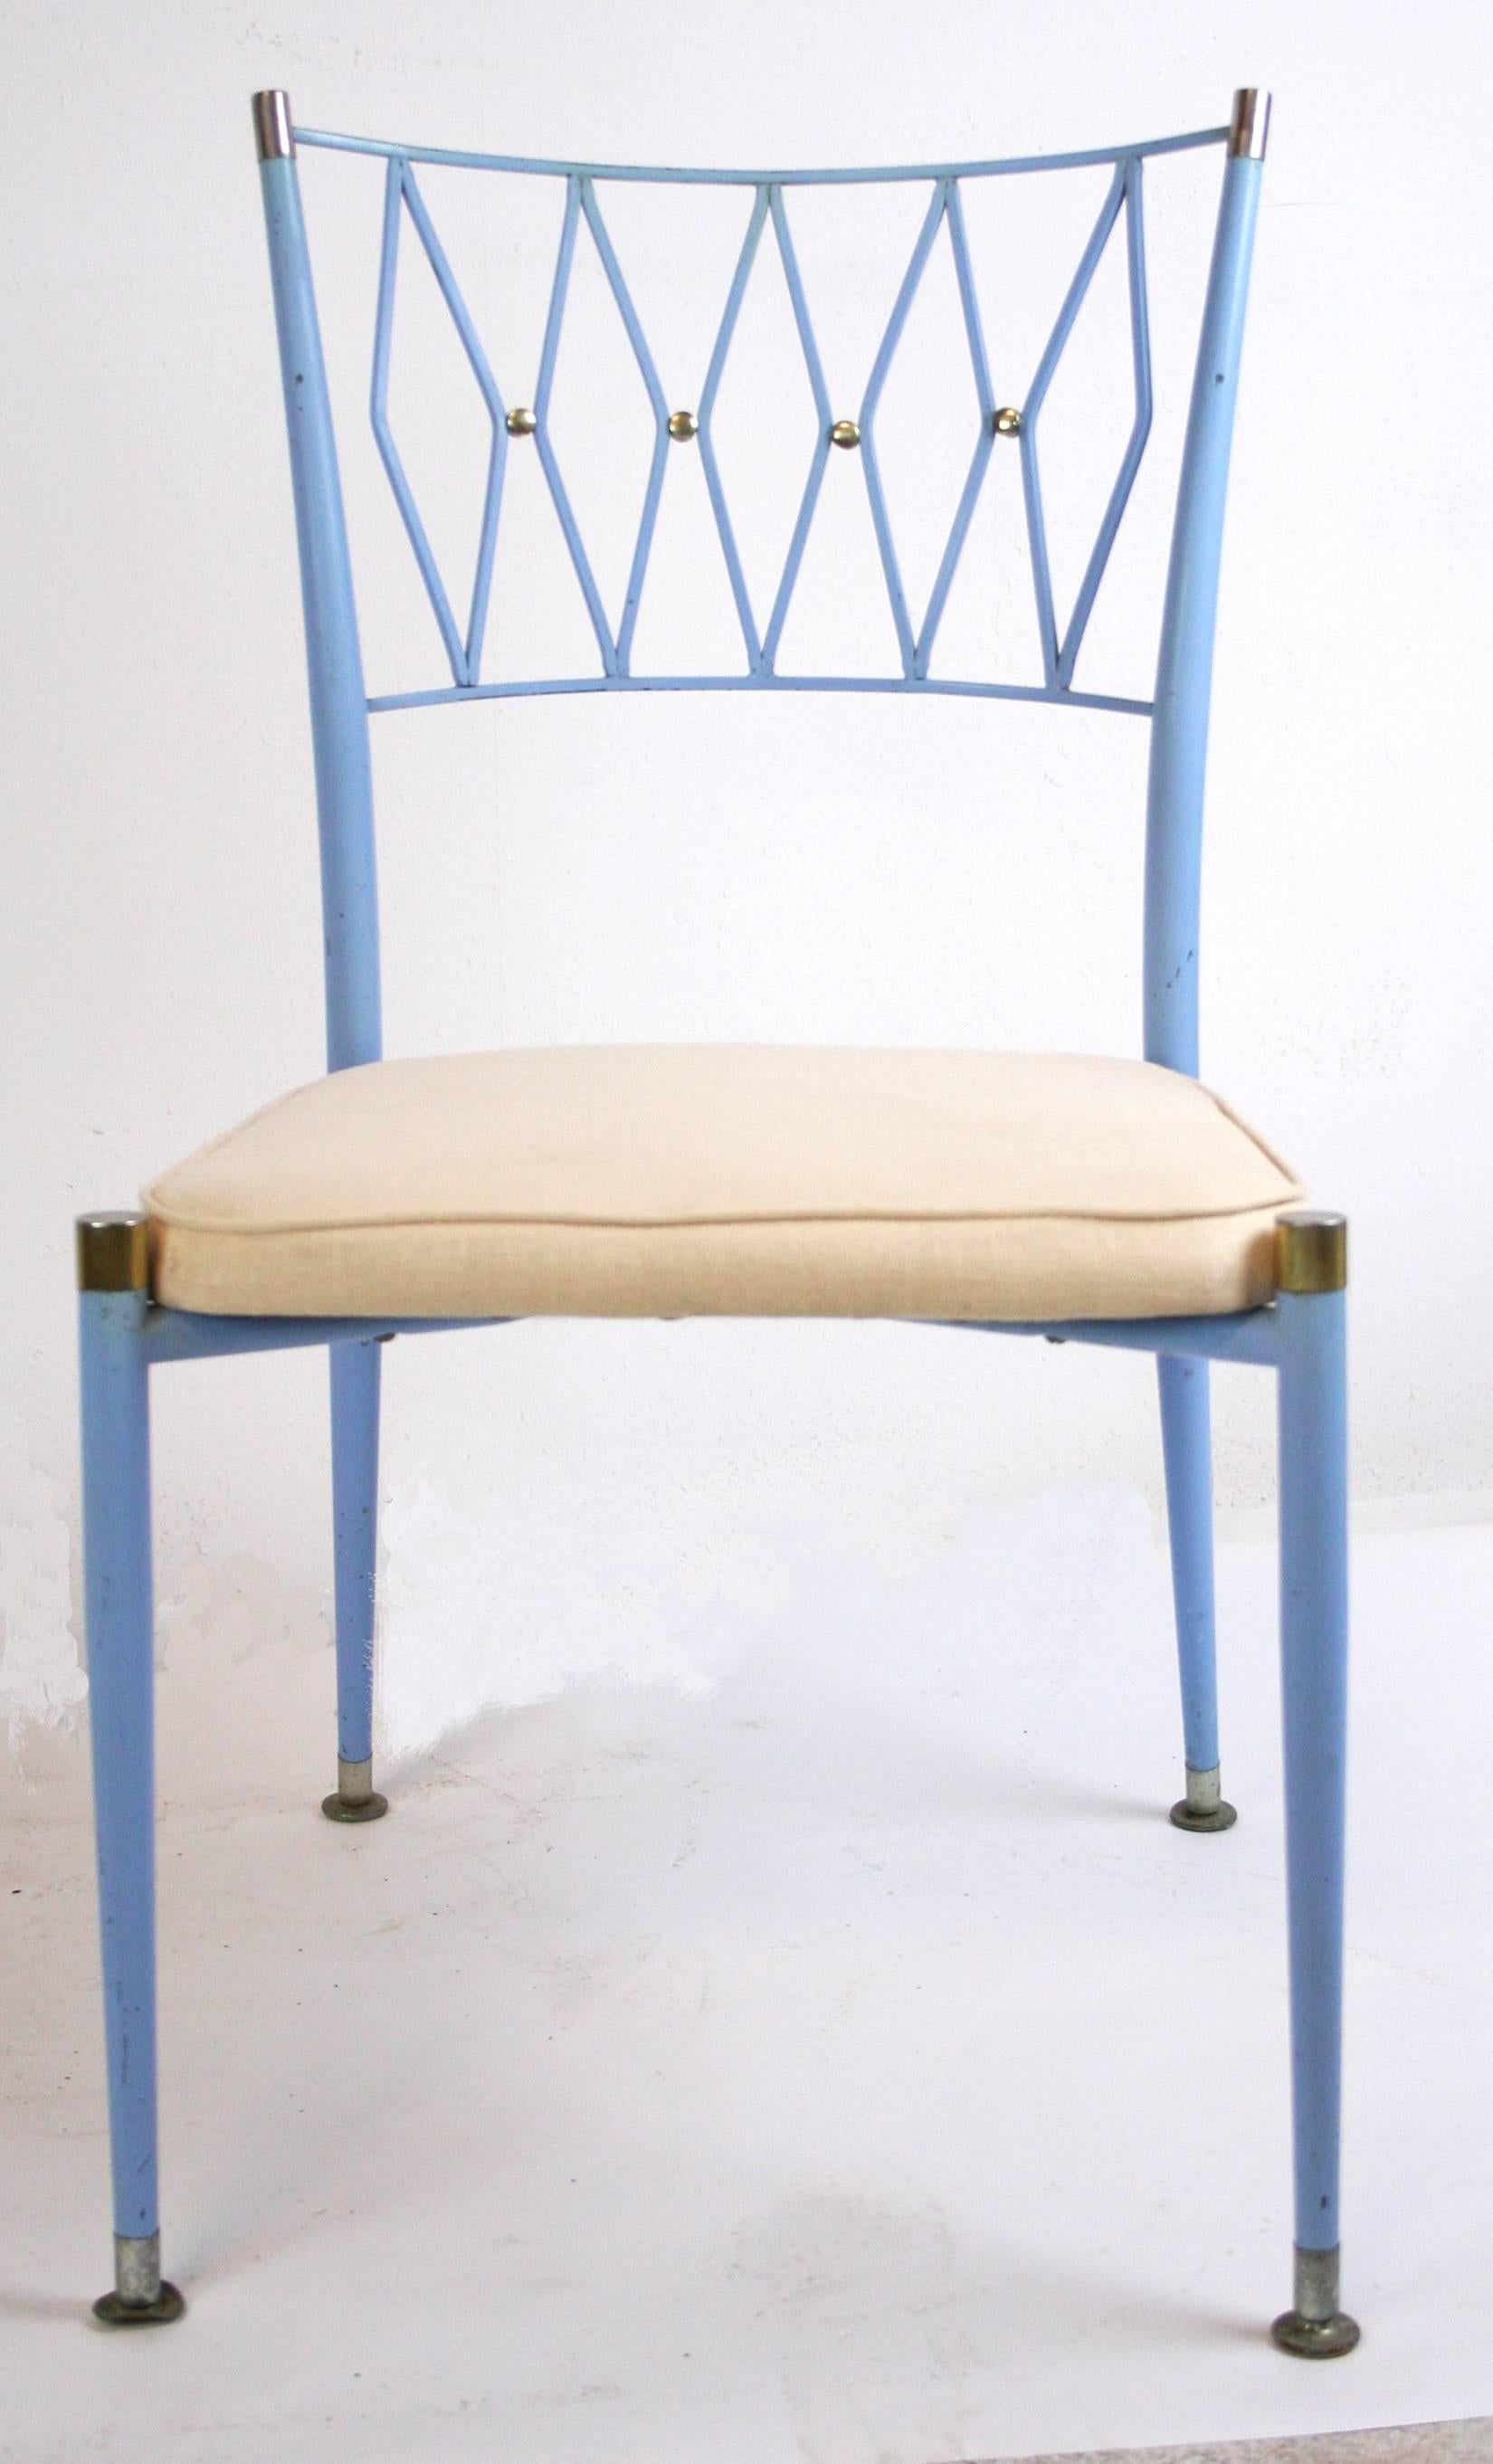 Un ensemble chic de quatre chaises de salle à manger en métal peint avec des accents en laiton dans le style de Colette Gueden ou Maison Jansen. Peinture bleue française d'origine et sièges rembourrés. Élégante latte arrière en treillis stylisé avec